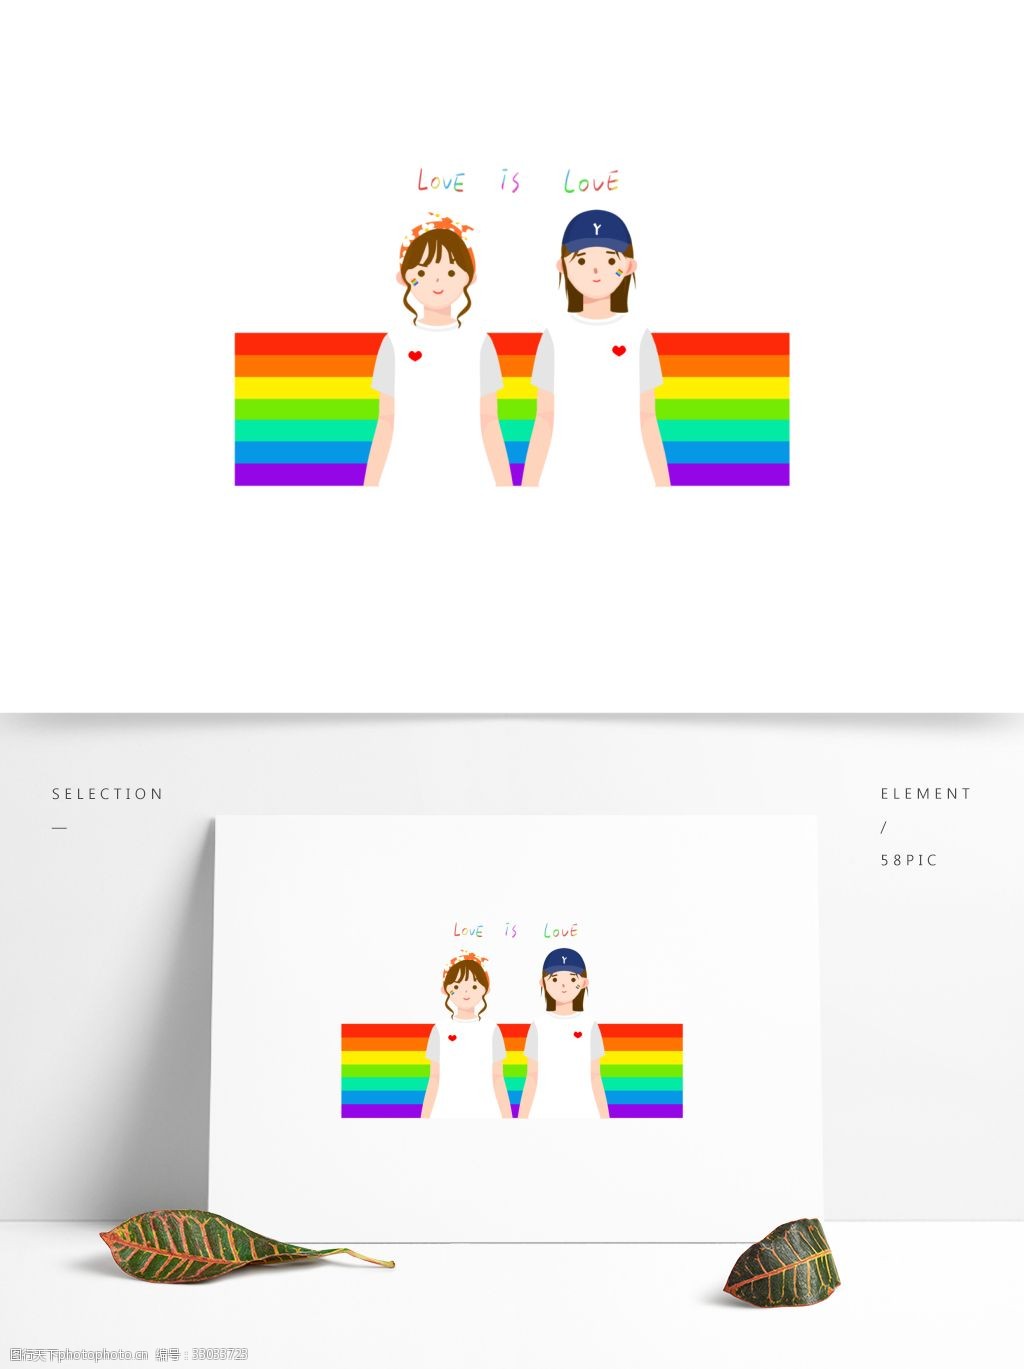 Pride flag, LGBTQ. Free public | Free Photo - rawpixel